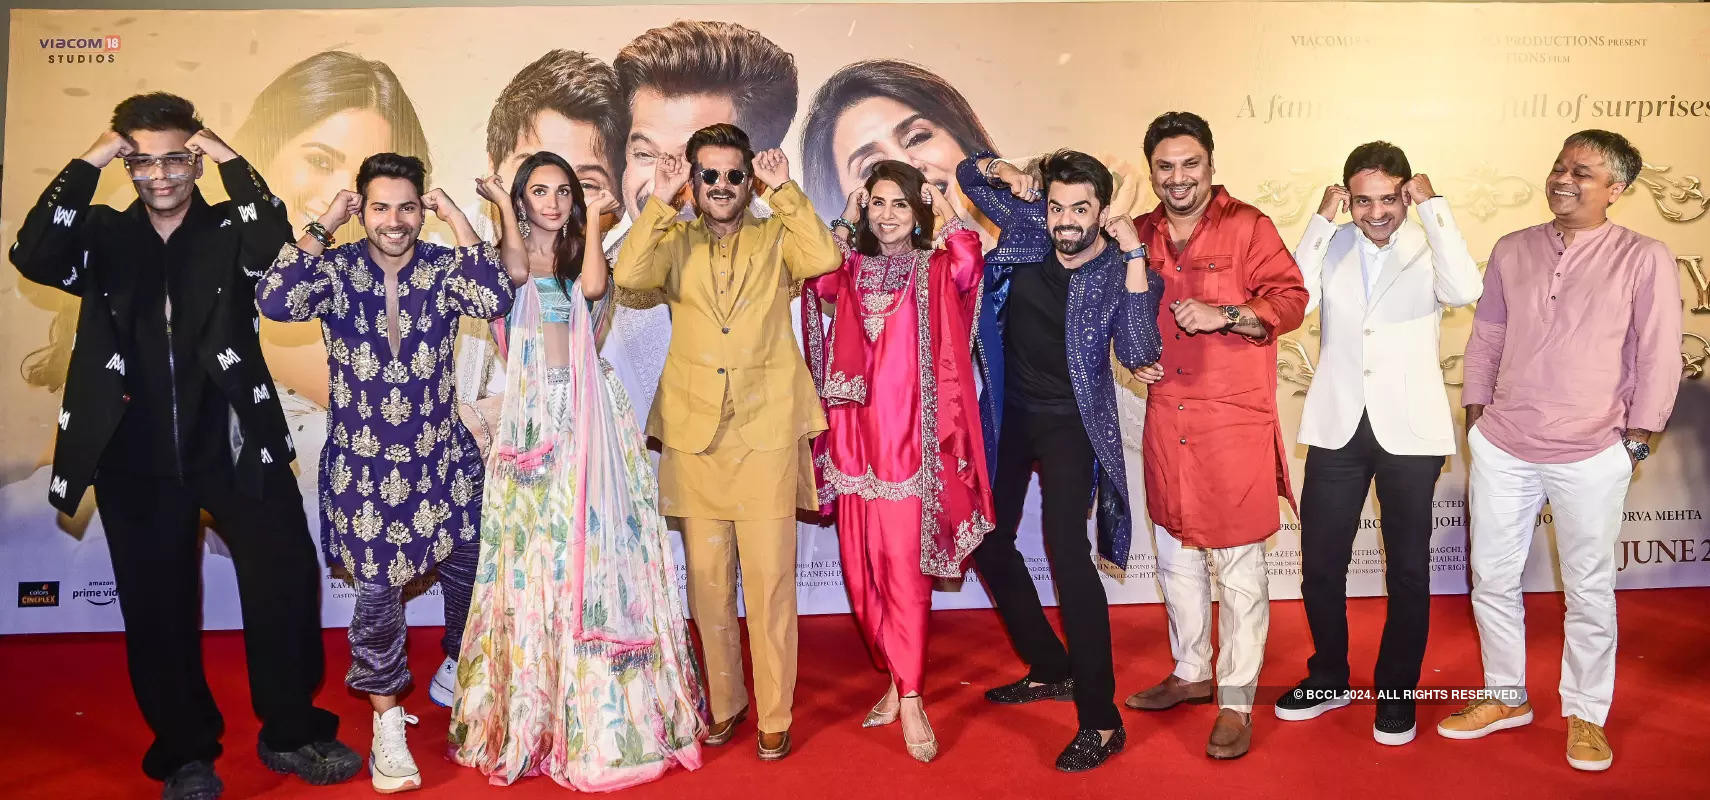 Varun Dhawan, Kiara Advani, Anil Kapoor and Neetu Kapoor launch the trailer of 'Jug Jugg Jeeyo' in style